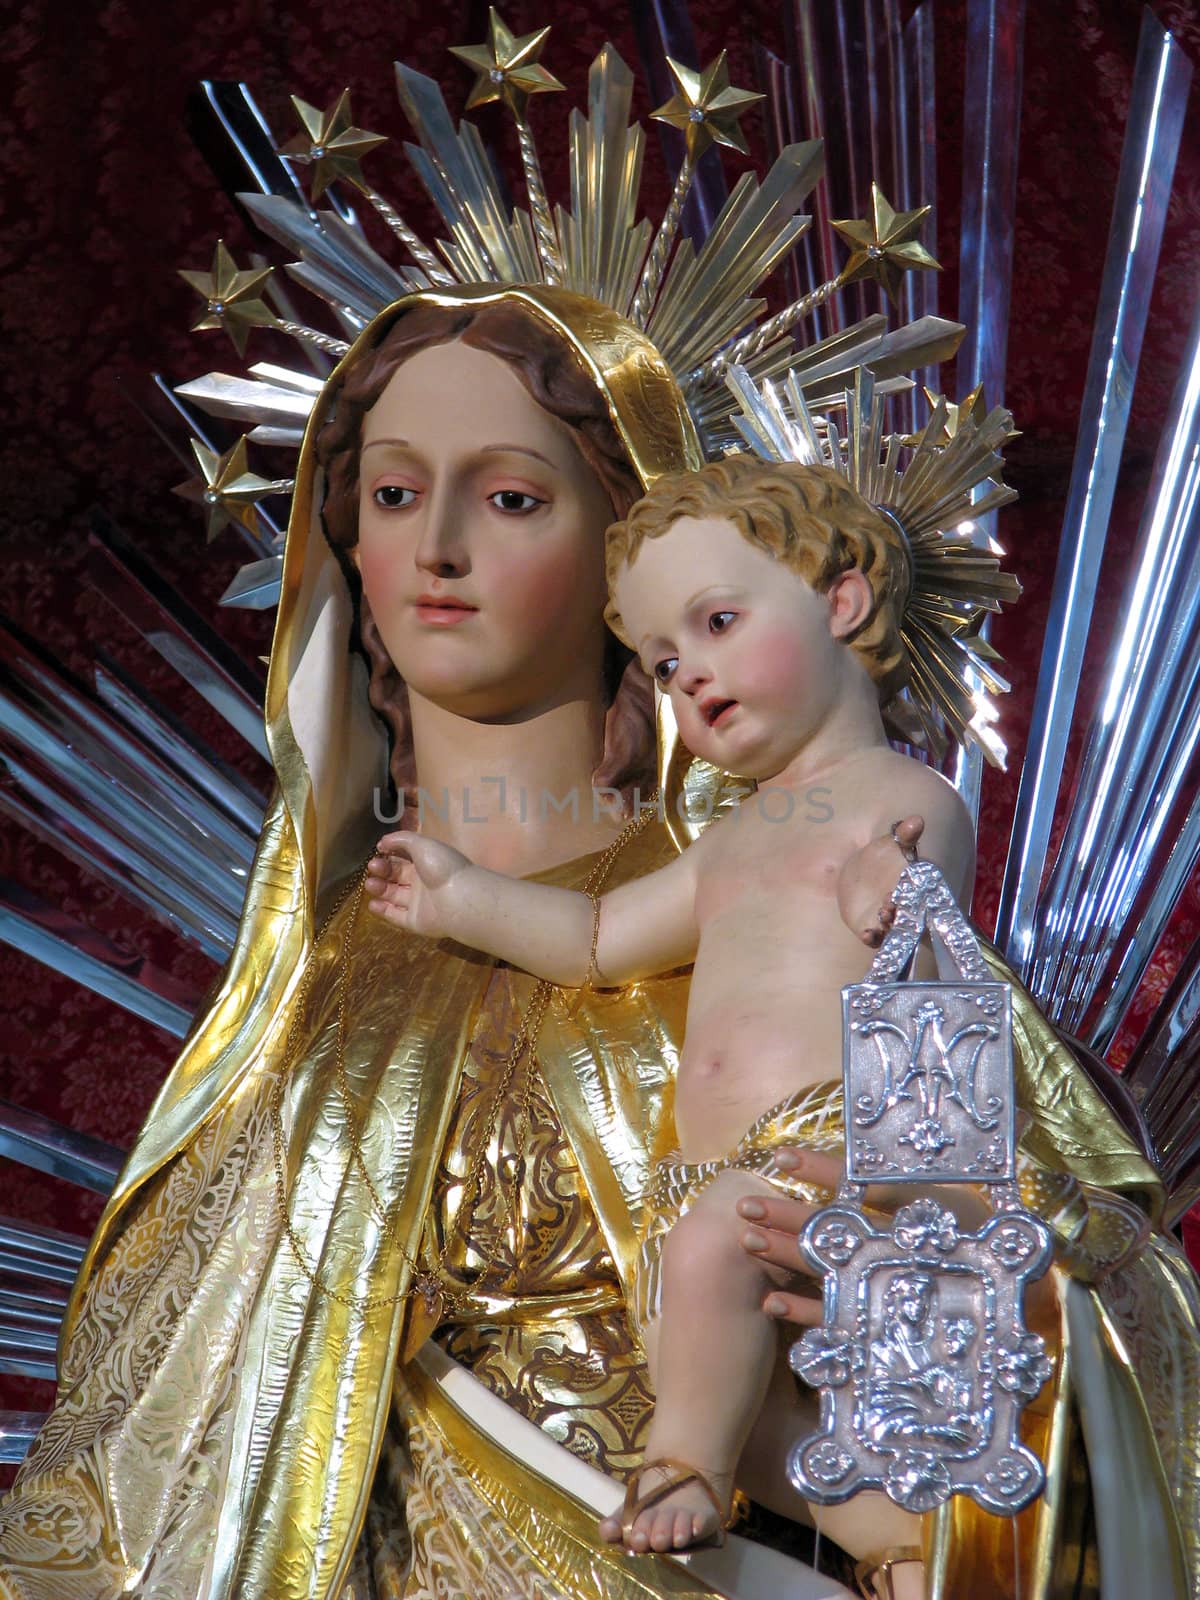 Our Lady of Mount Carmel by fajjenzu